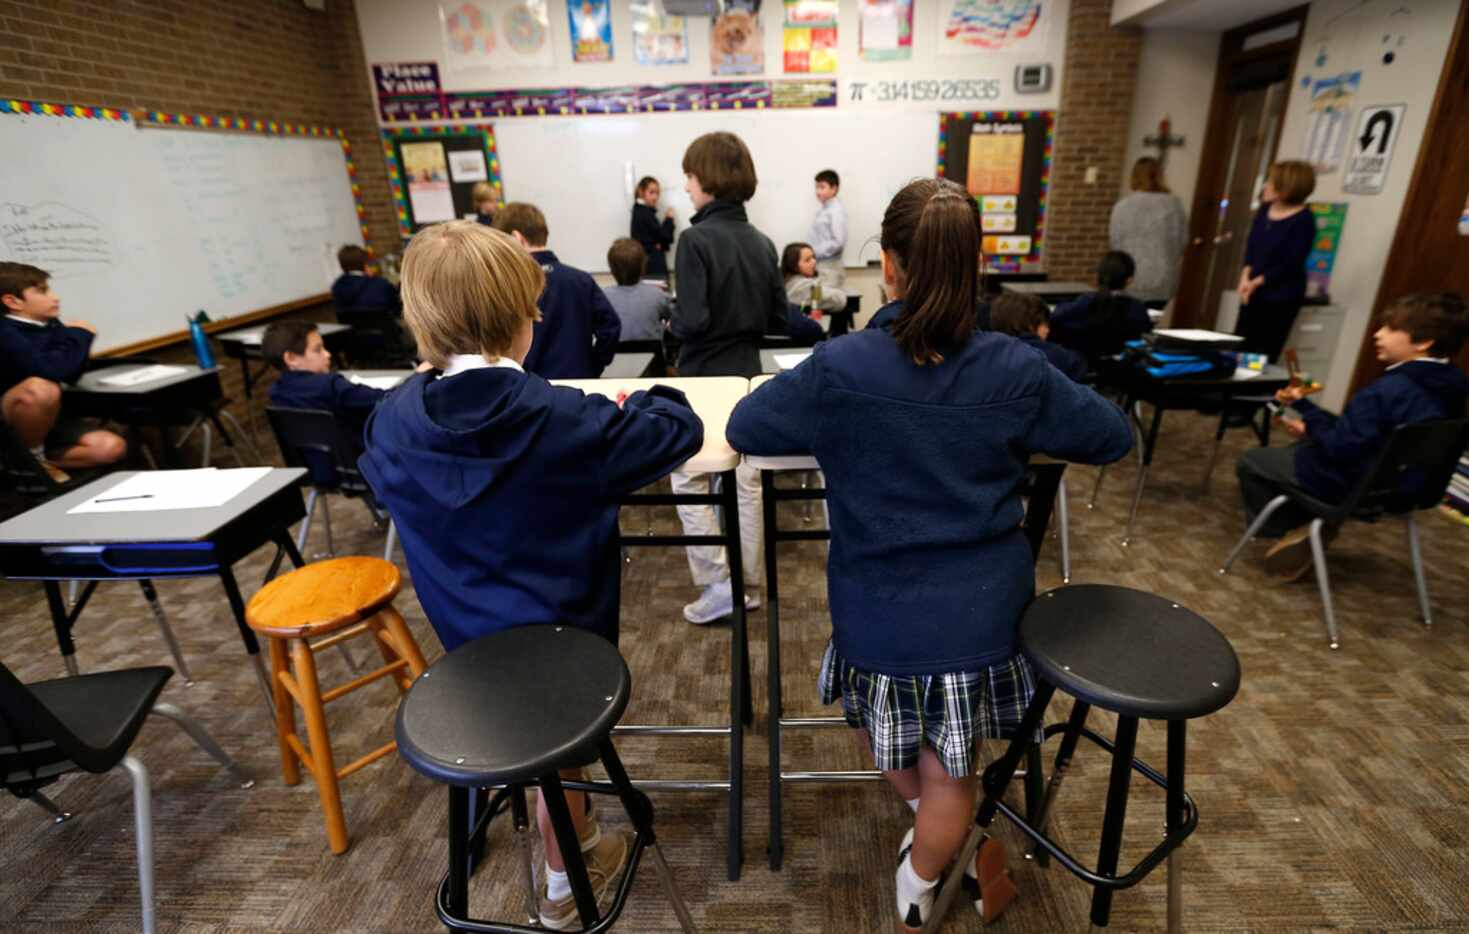 Fifth-graders Rett Detwiler, 11, left, and Parmida Zandinejad, 10, use standing desks during...